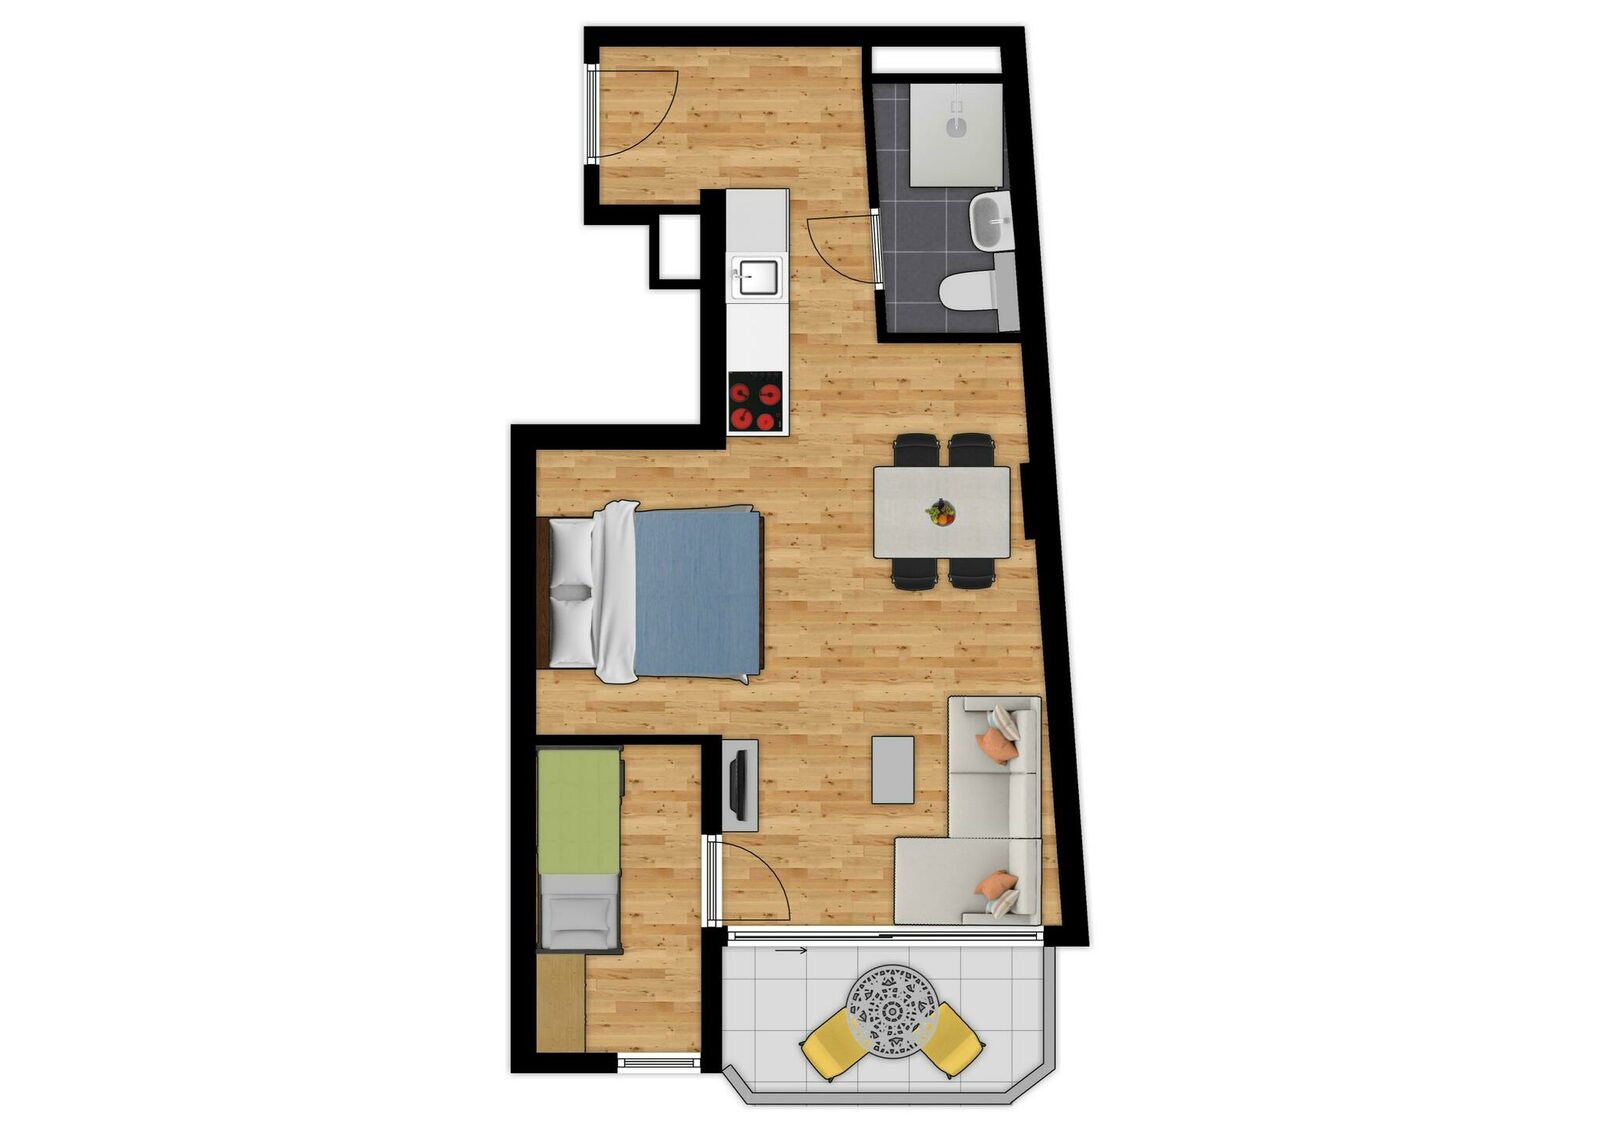 Comfort Suite - 4p | Bedroom - Sleeping corner | Balcony - Sea view